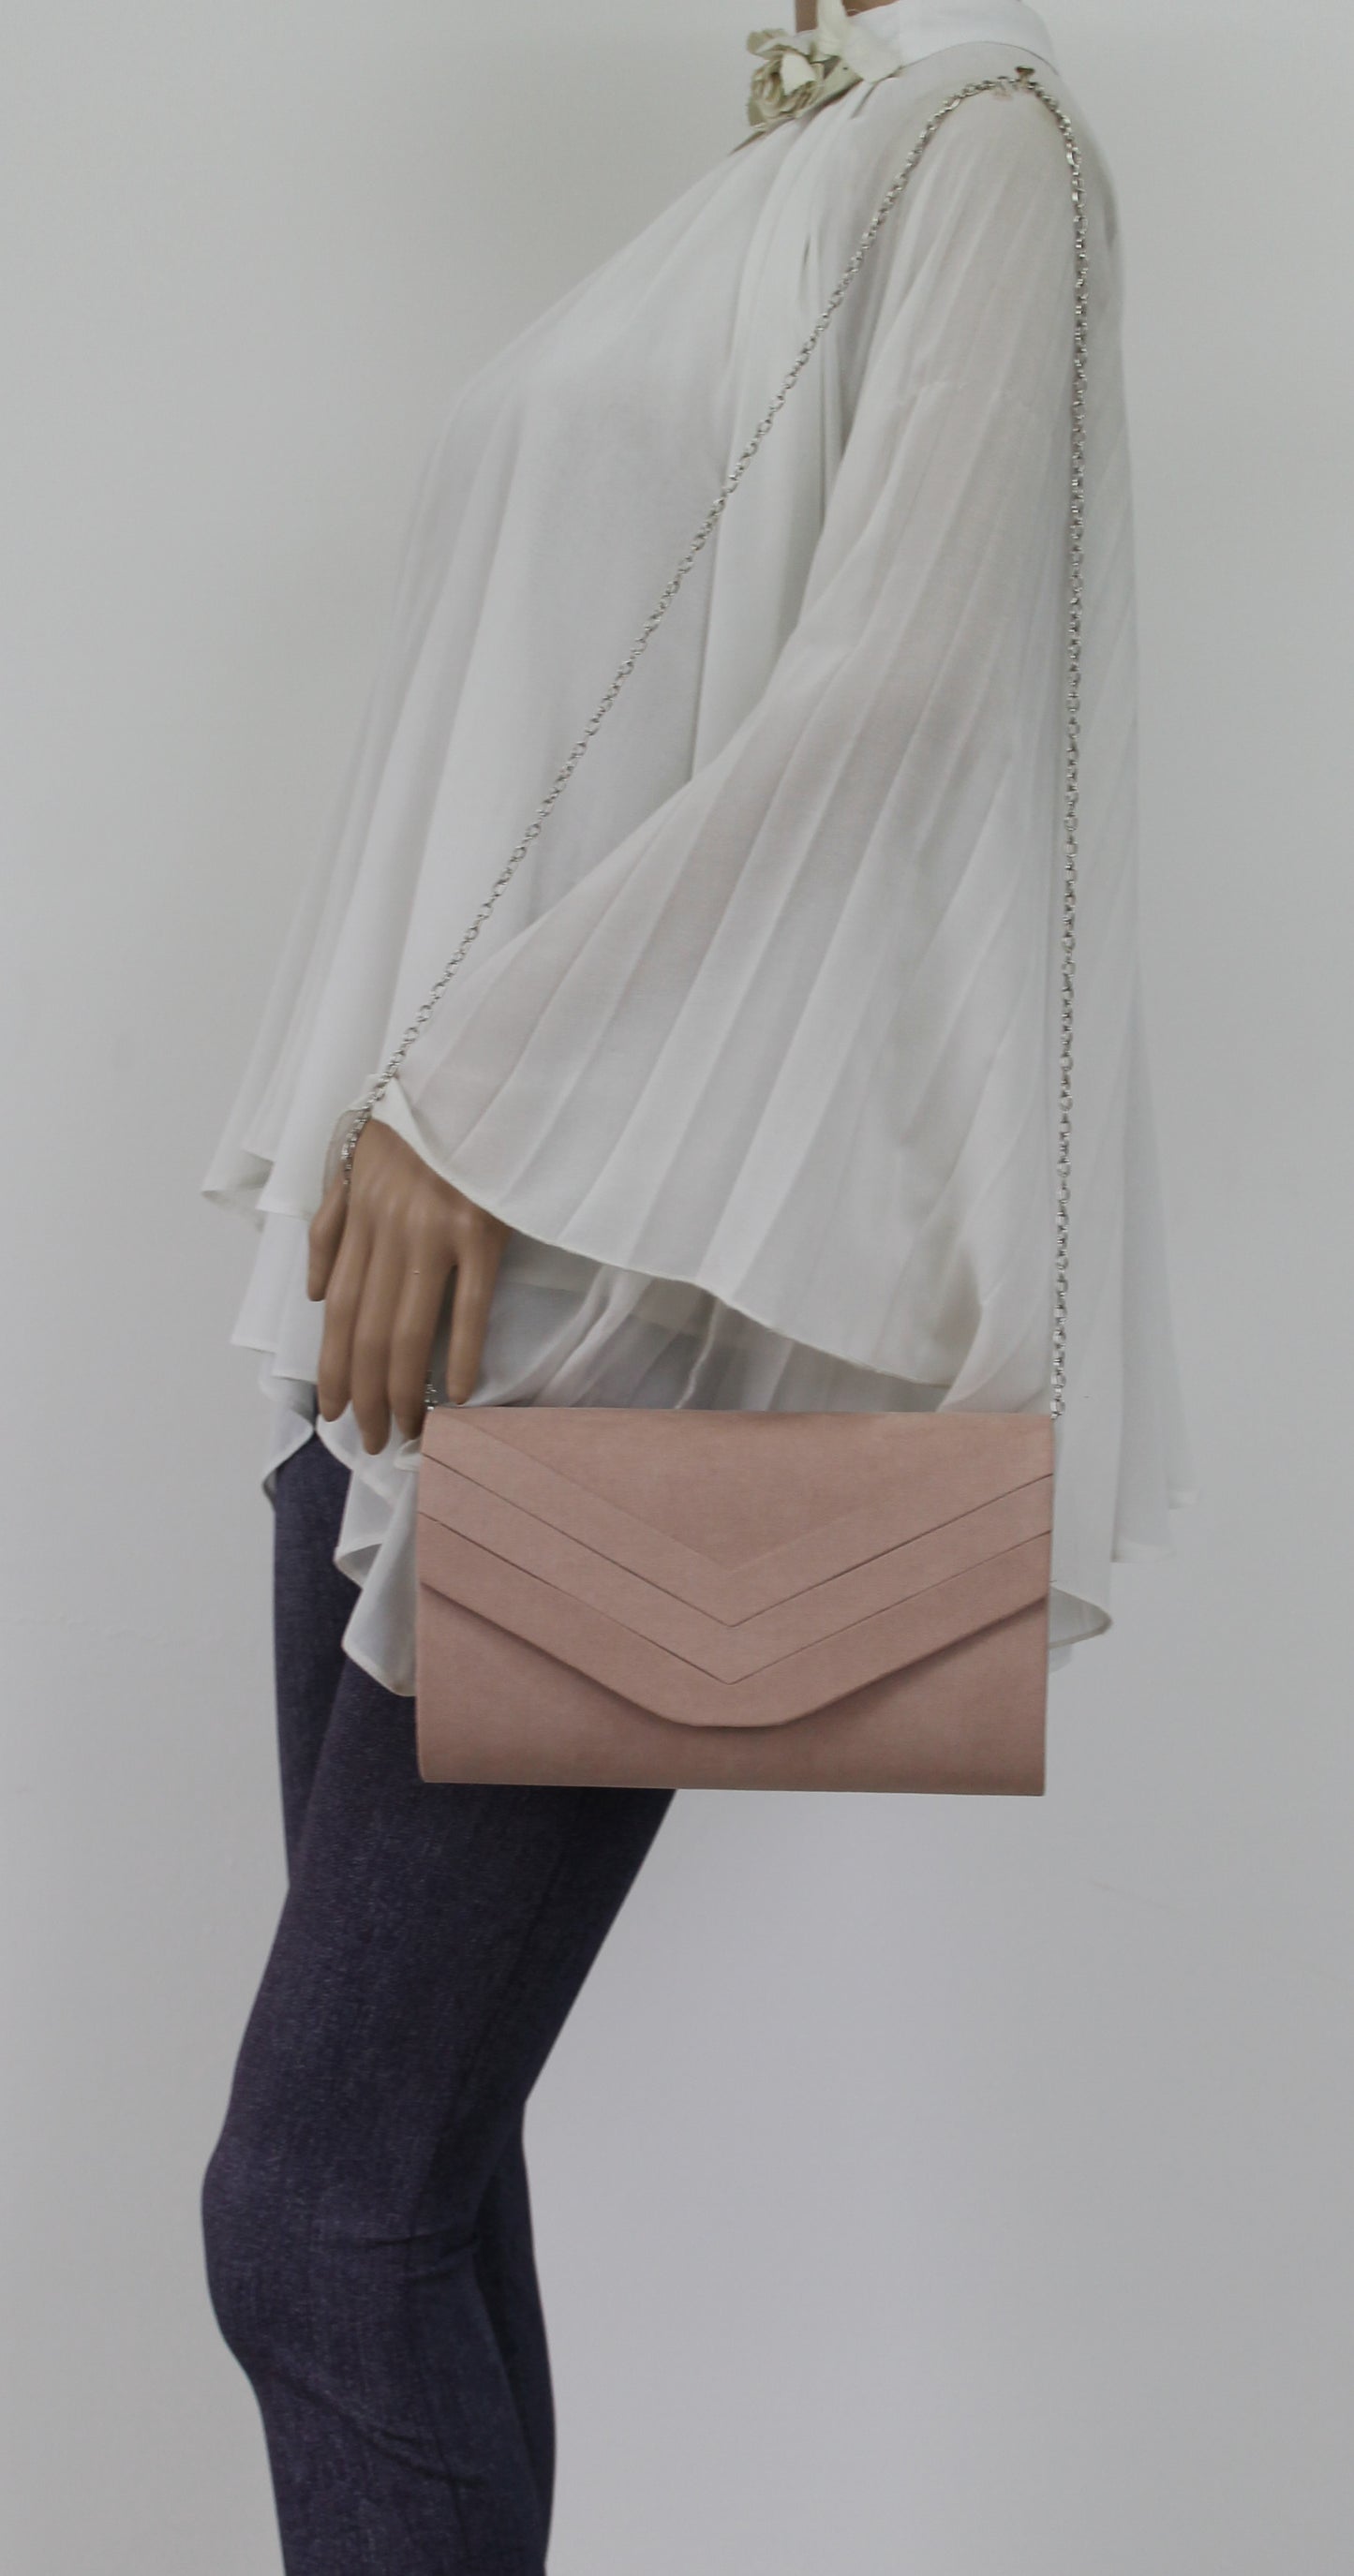 Samantha V Detail Clutch Bag Beige